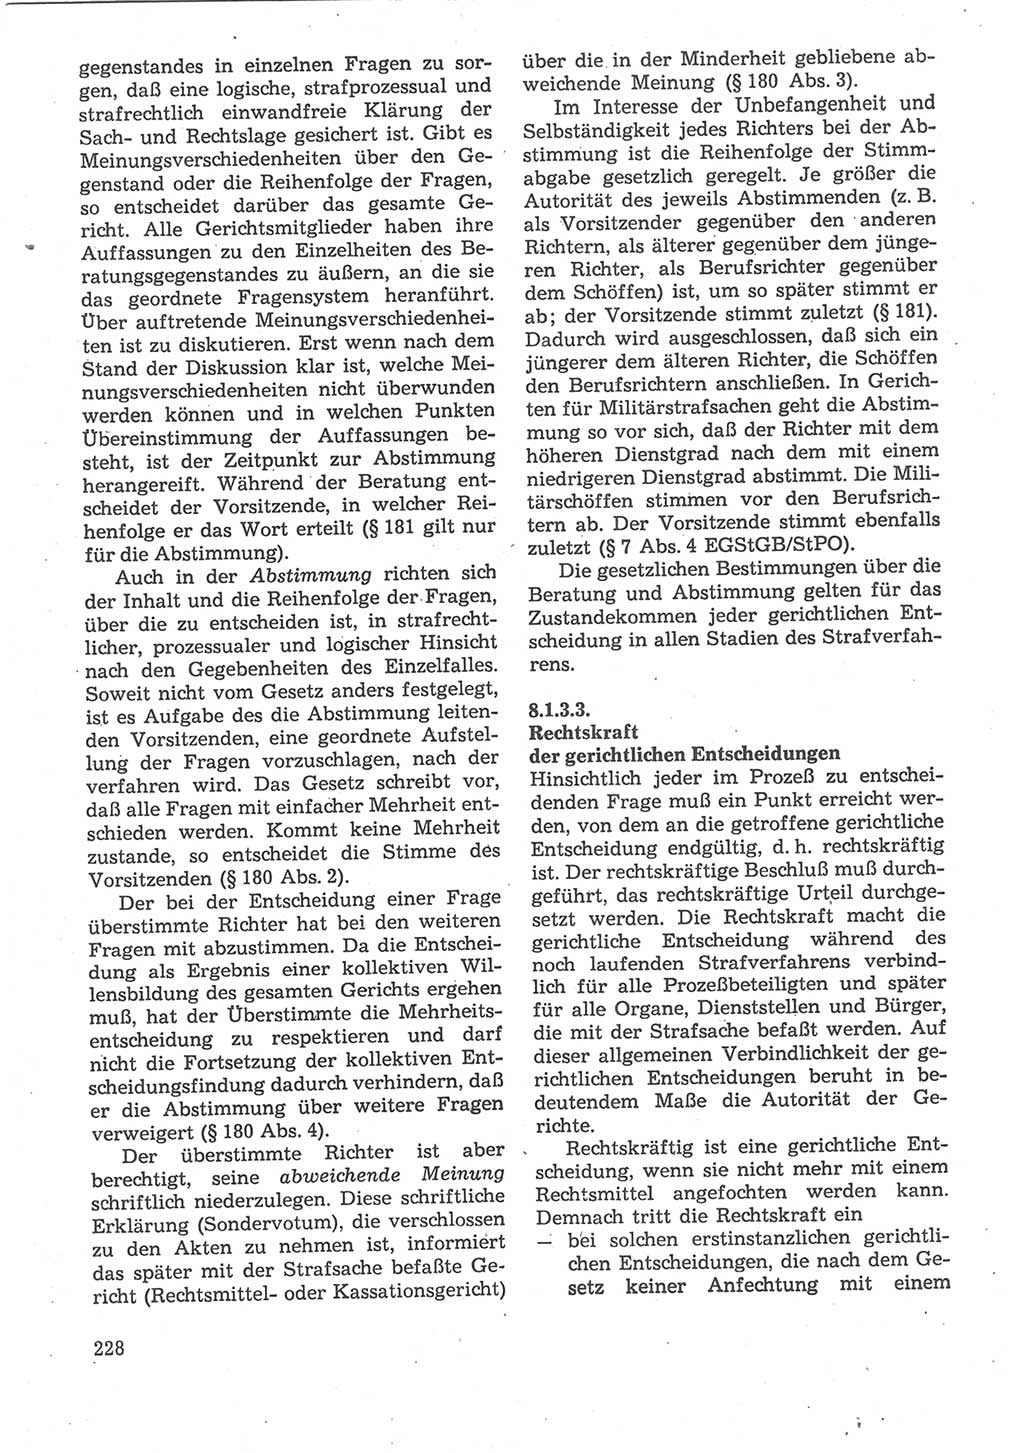 Strafverfahrensrecht [Deutsche Demokratische Republik (DDR)], Lehrbuch 1987, Seite 228 (Strafverf.-R. DDR Lb. 1987, S. 228)